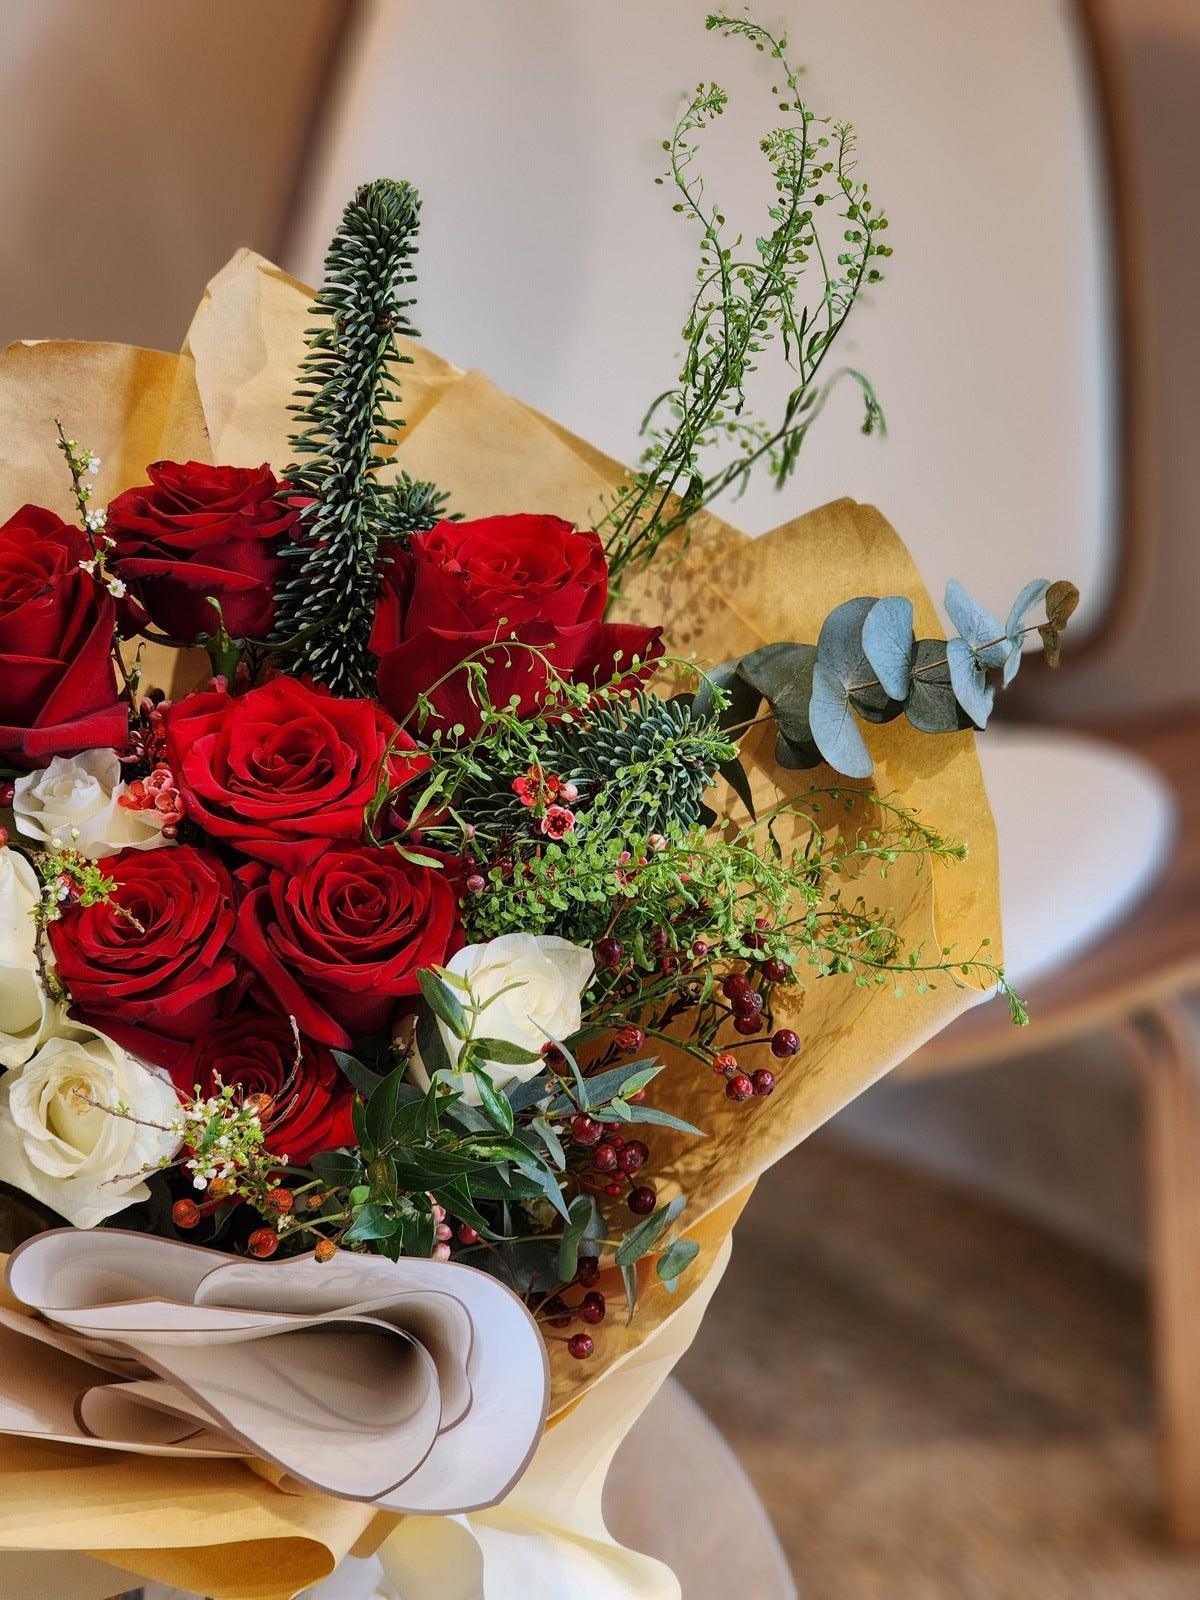 紅玫瑰 紅玫瑰花束 Lavish Florist 即日送貨 香港花店 網上花店